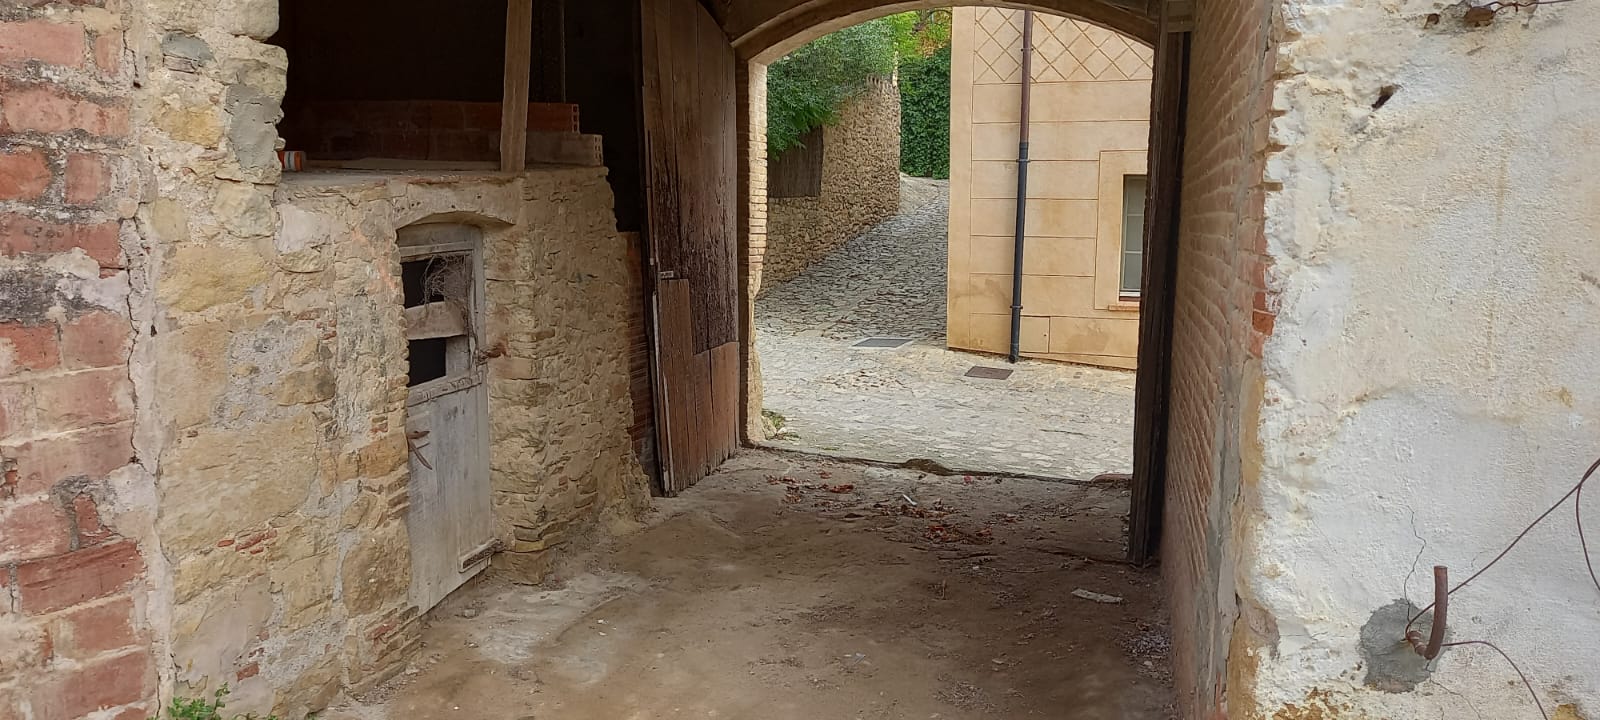 Oportunitat! Casa de pedra a restaurar amb jardí en venda situada al costat de la muralla de Peratallada.